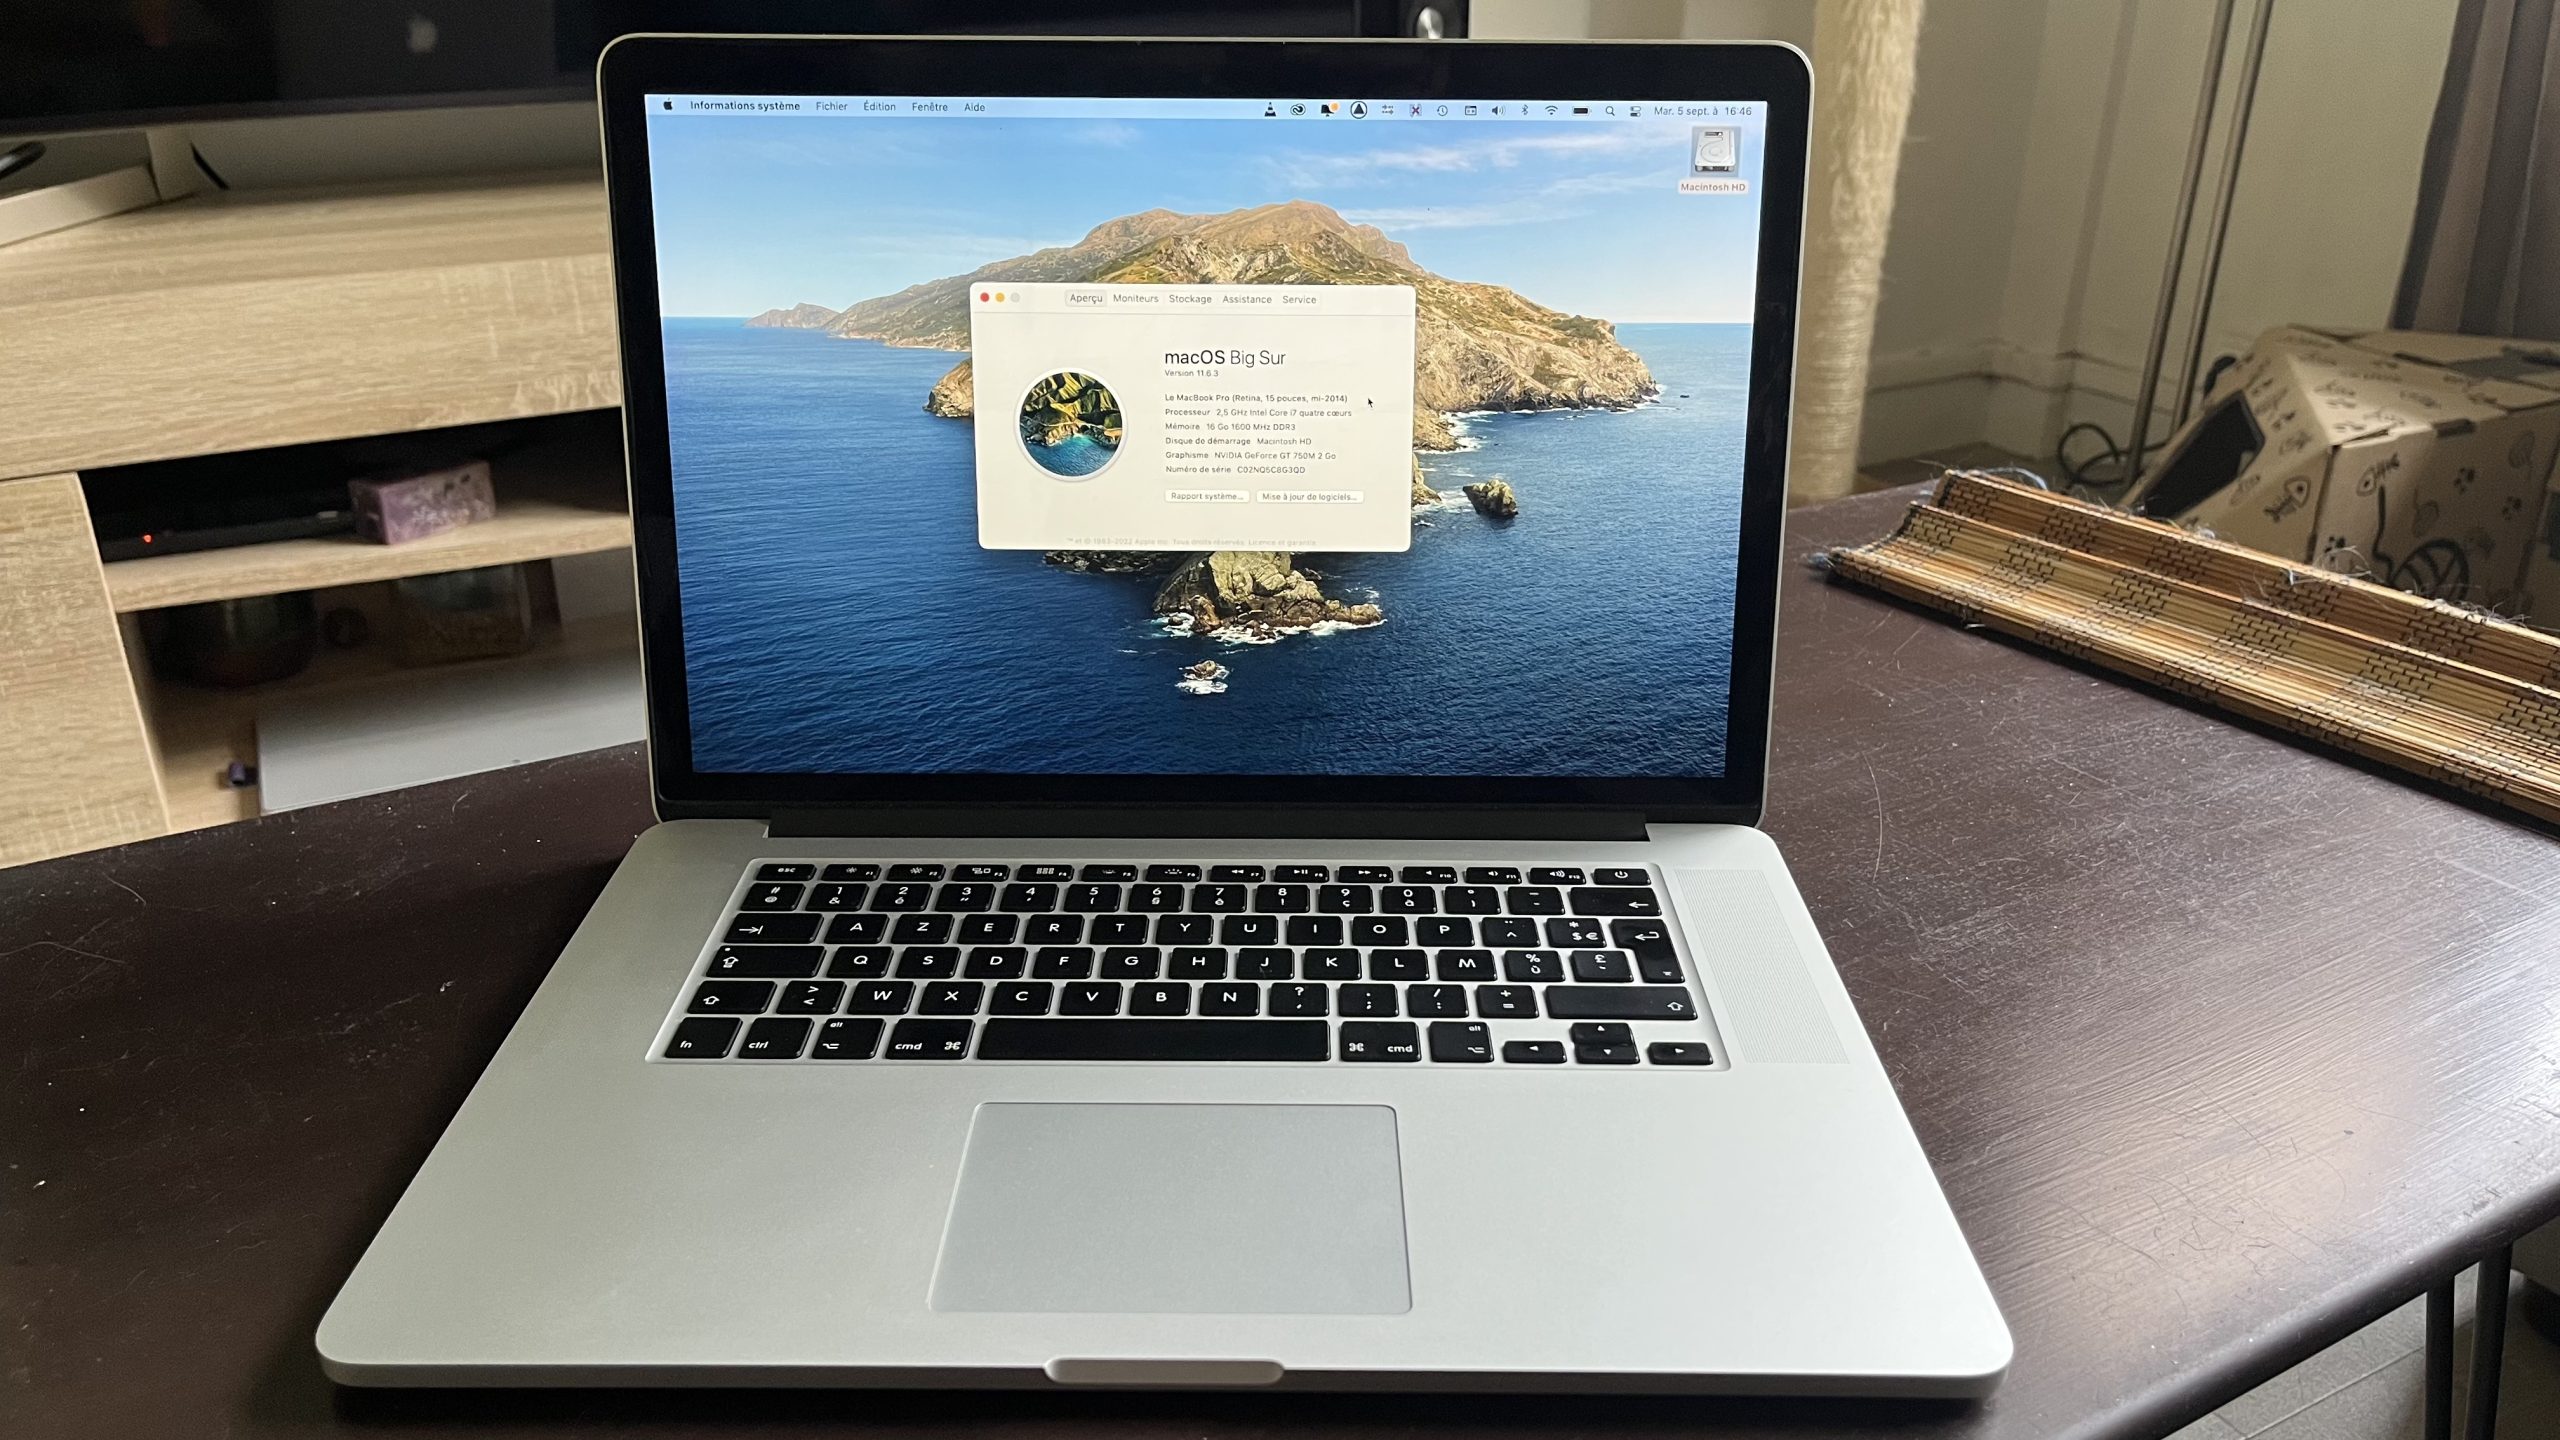 MacBook Pro 15 pouces 2,5 GHz de mi 2014